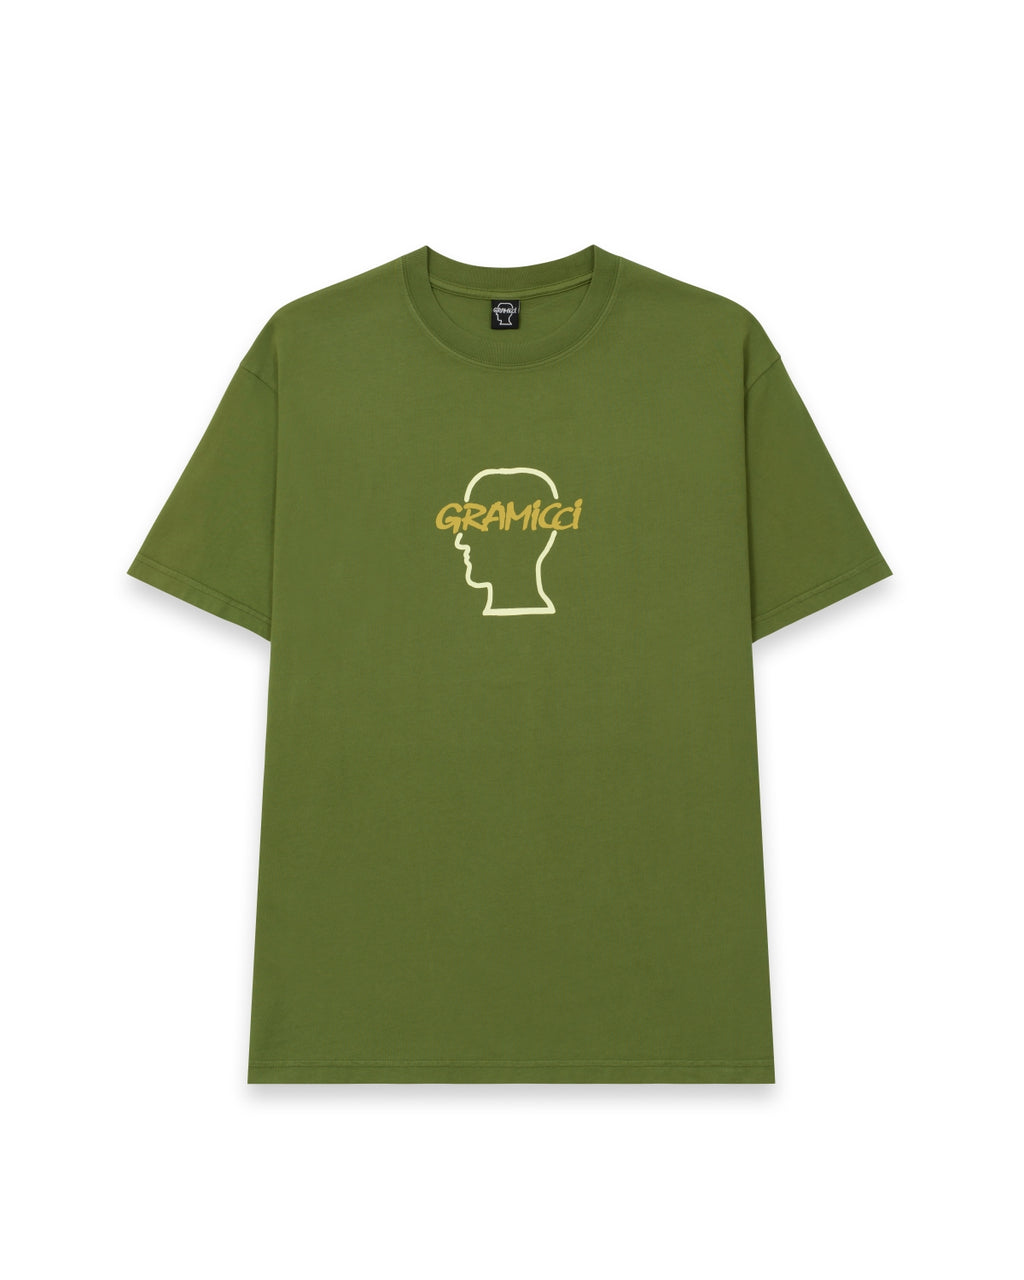 Brain Dead X Gramicci New Earth T-Shirt - Olive